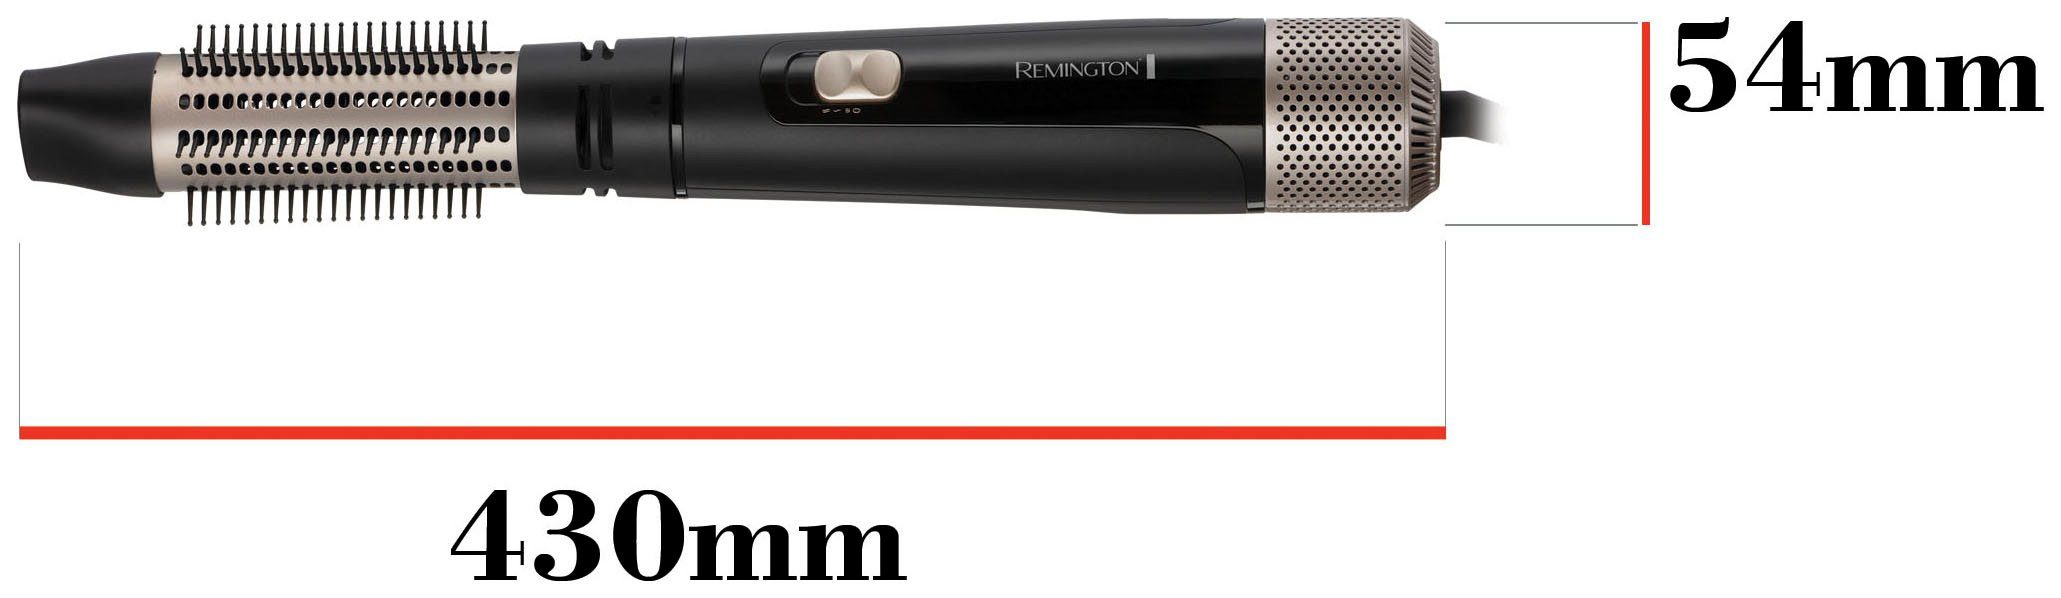 Remington Warmluftbürste Blow Dry & für Haare Style 1.000 (Airstyler/Rund-&Lockenbürste) Watt mittellange AS7500